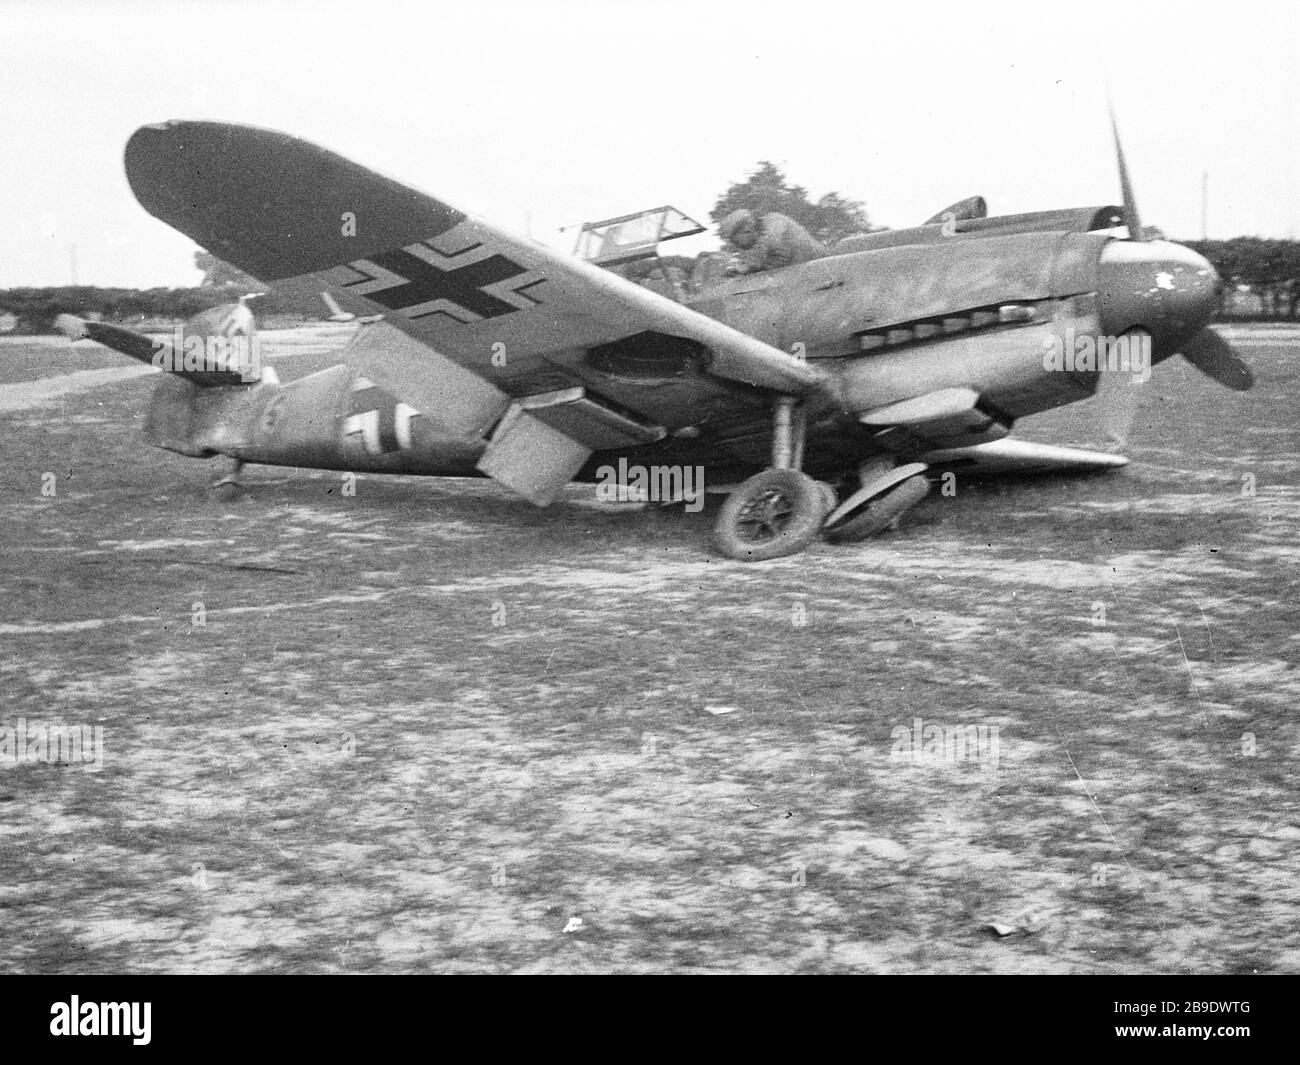 A Messerschmitt Me 109 After A Crash Landing The Landing Gear Is Broken The Picture Was